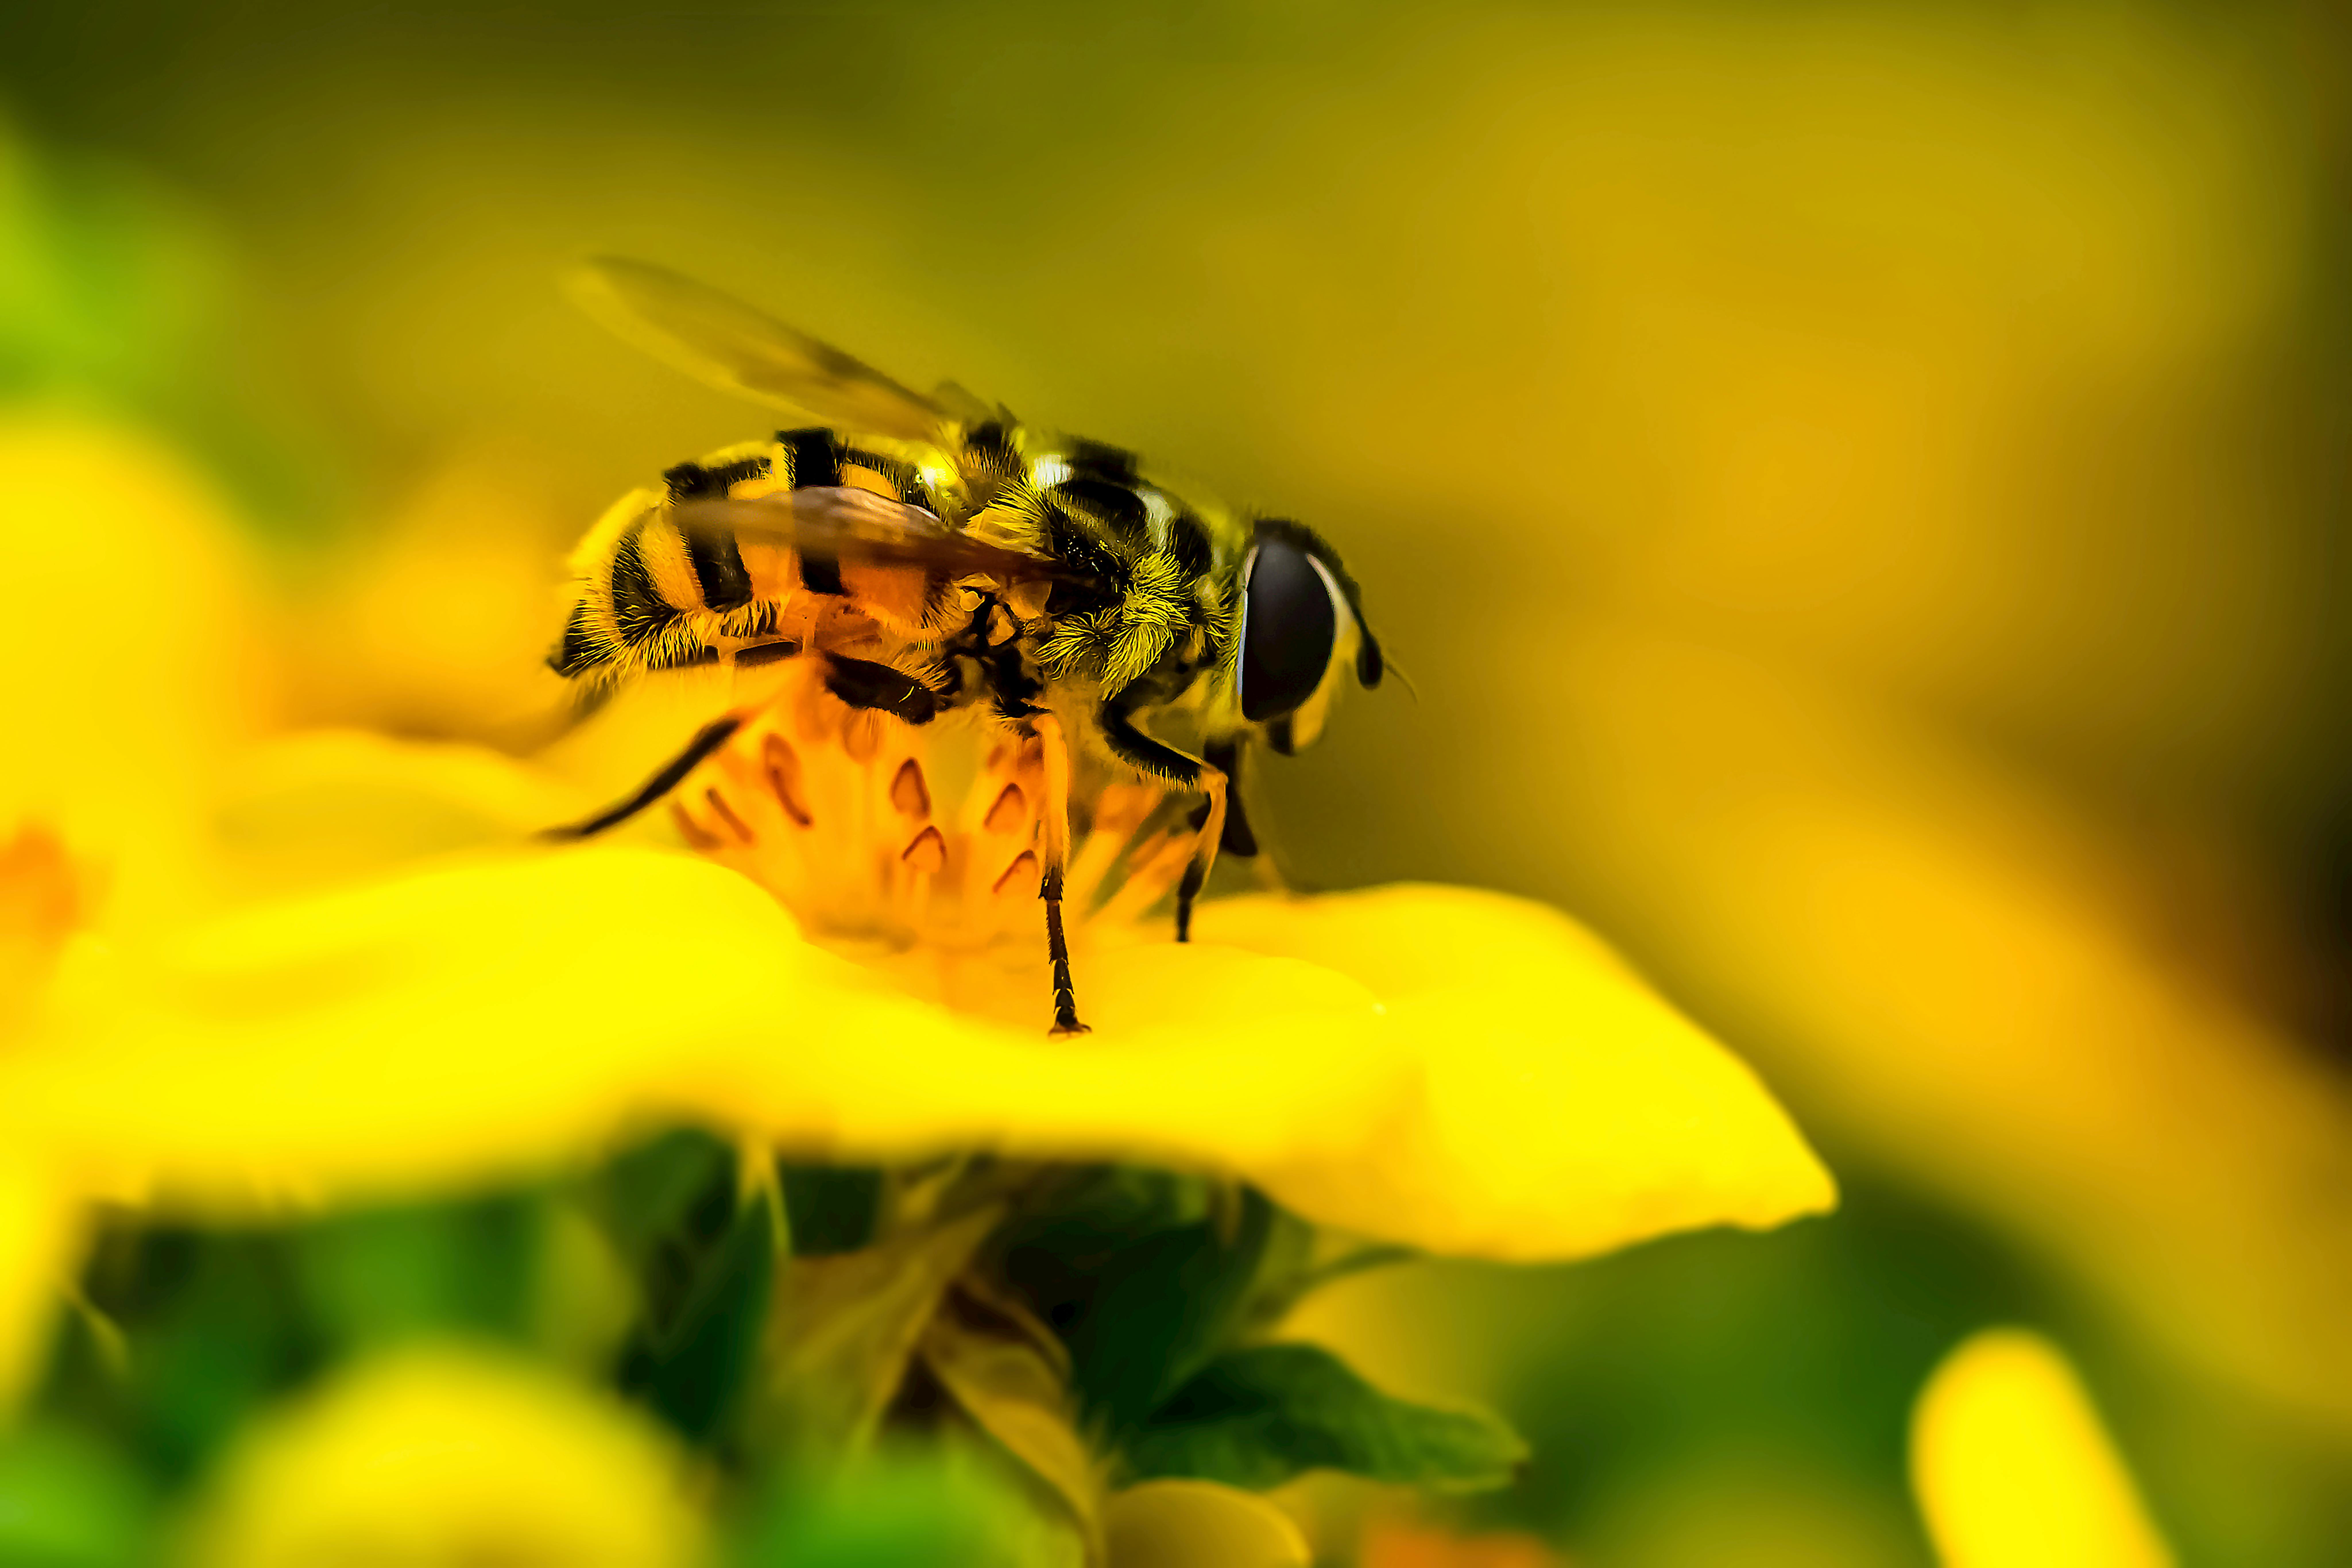 Ong trên hoa vàng: Cảnh tượng một chú ong đang vui nhộn đậu trên một chiếc hoa vàng thật sự đáng yêu và ngộ nghĩnh. Hãy xem hình ảnh này để thưởng thức vẻ đẹp tự nhiên và đem lại cảm giác bình yên cho bản thân.